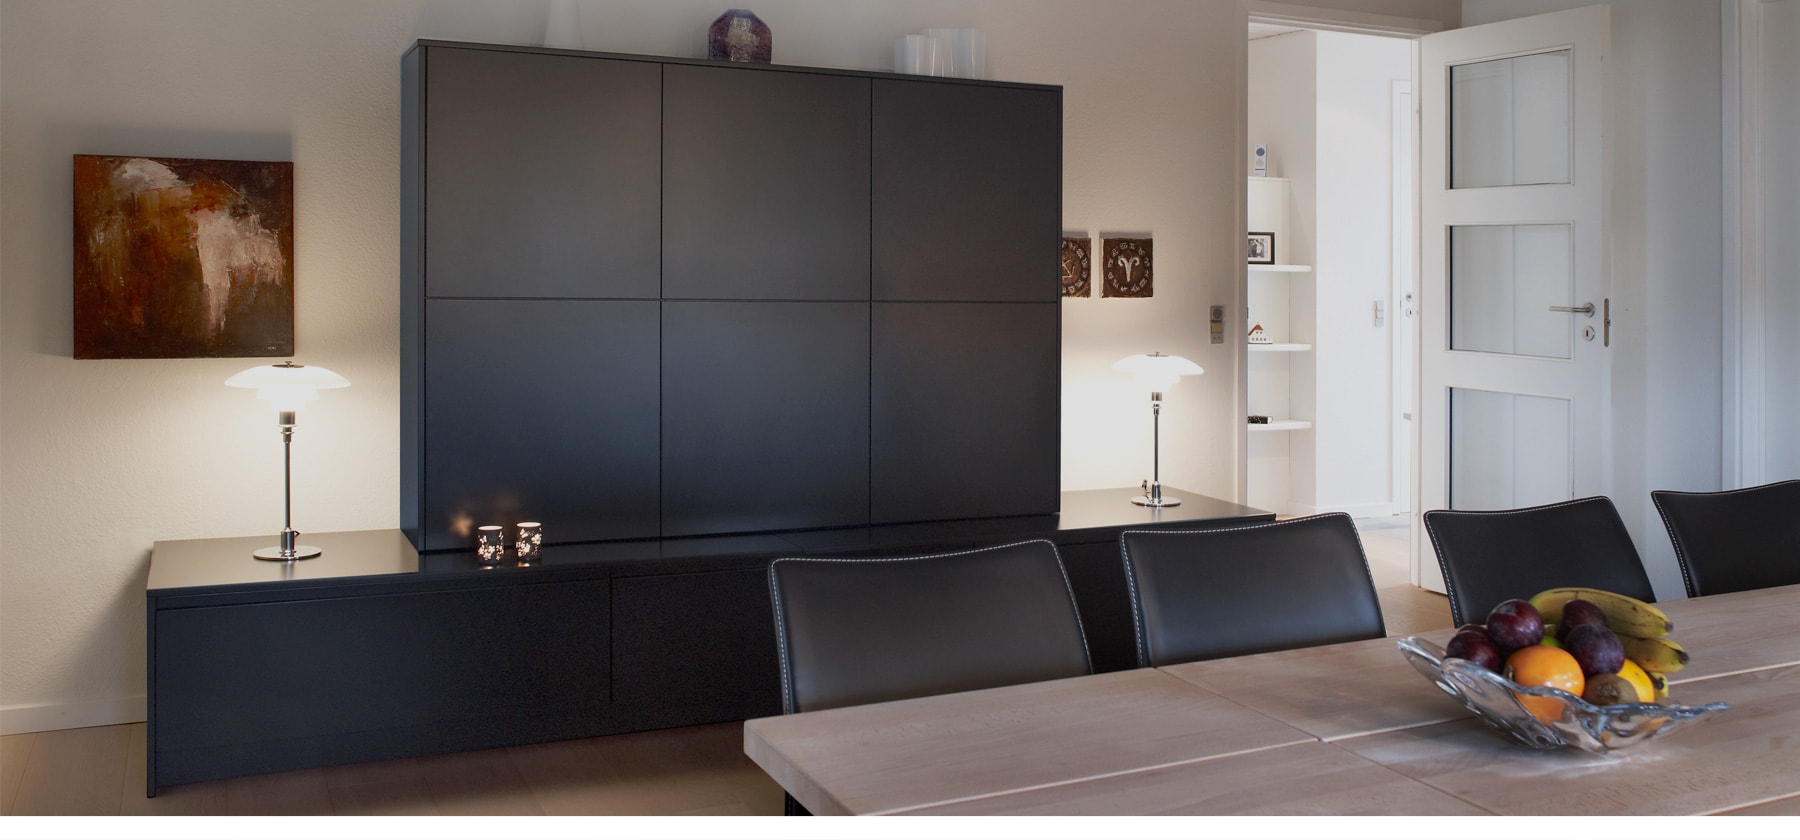 Design furnitureInterior and home decorating